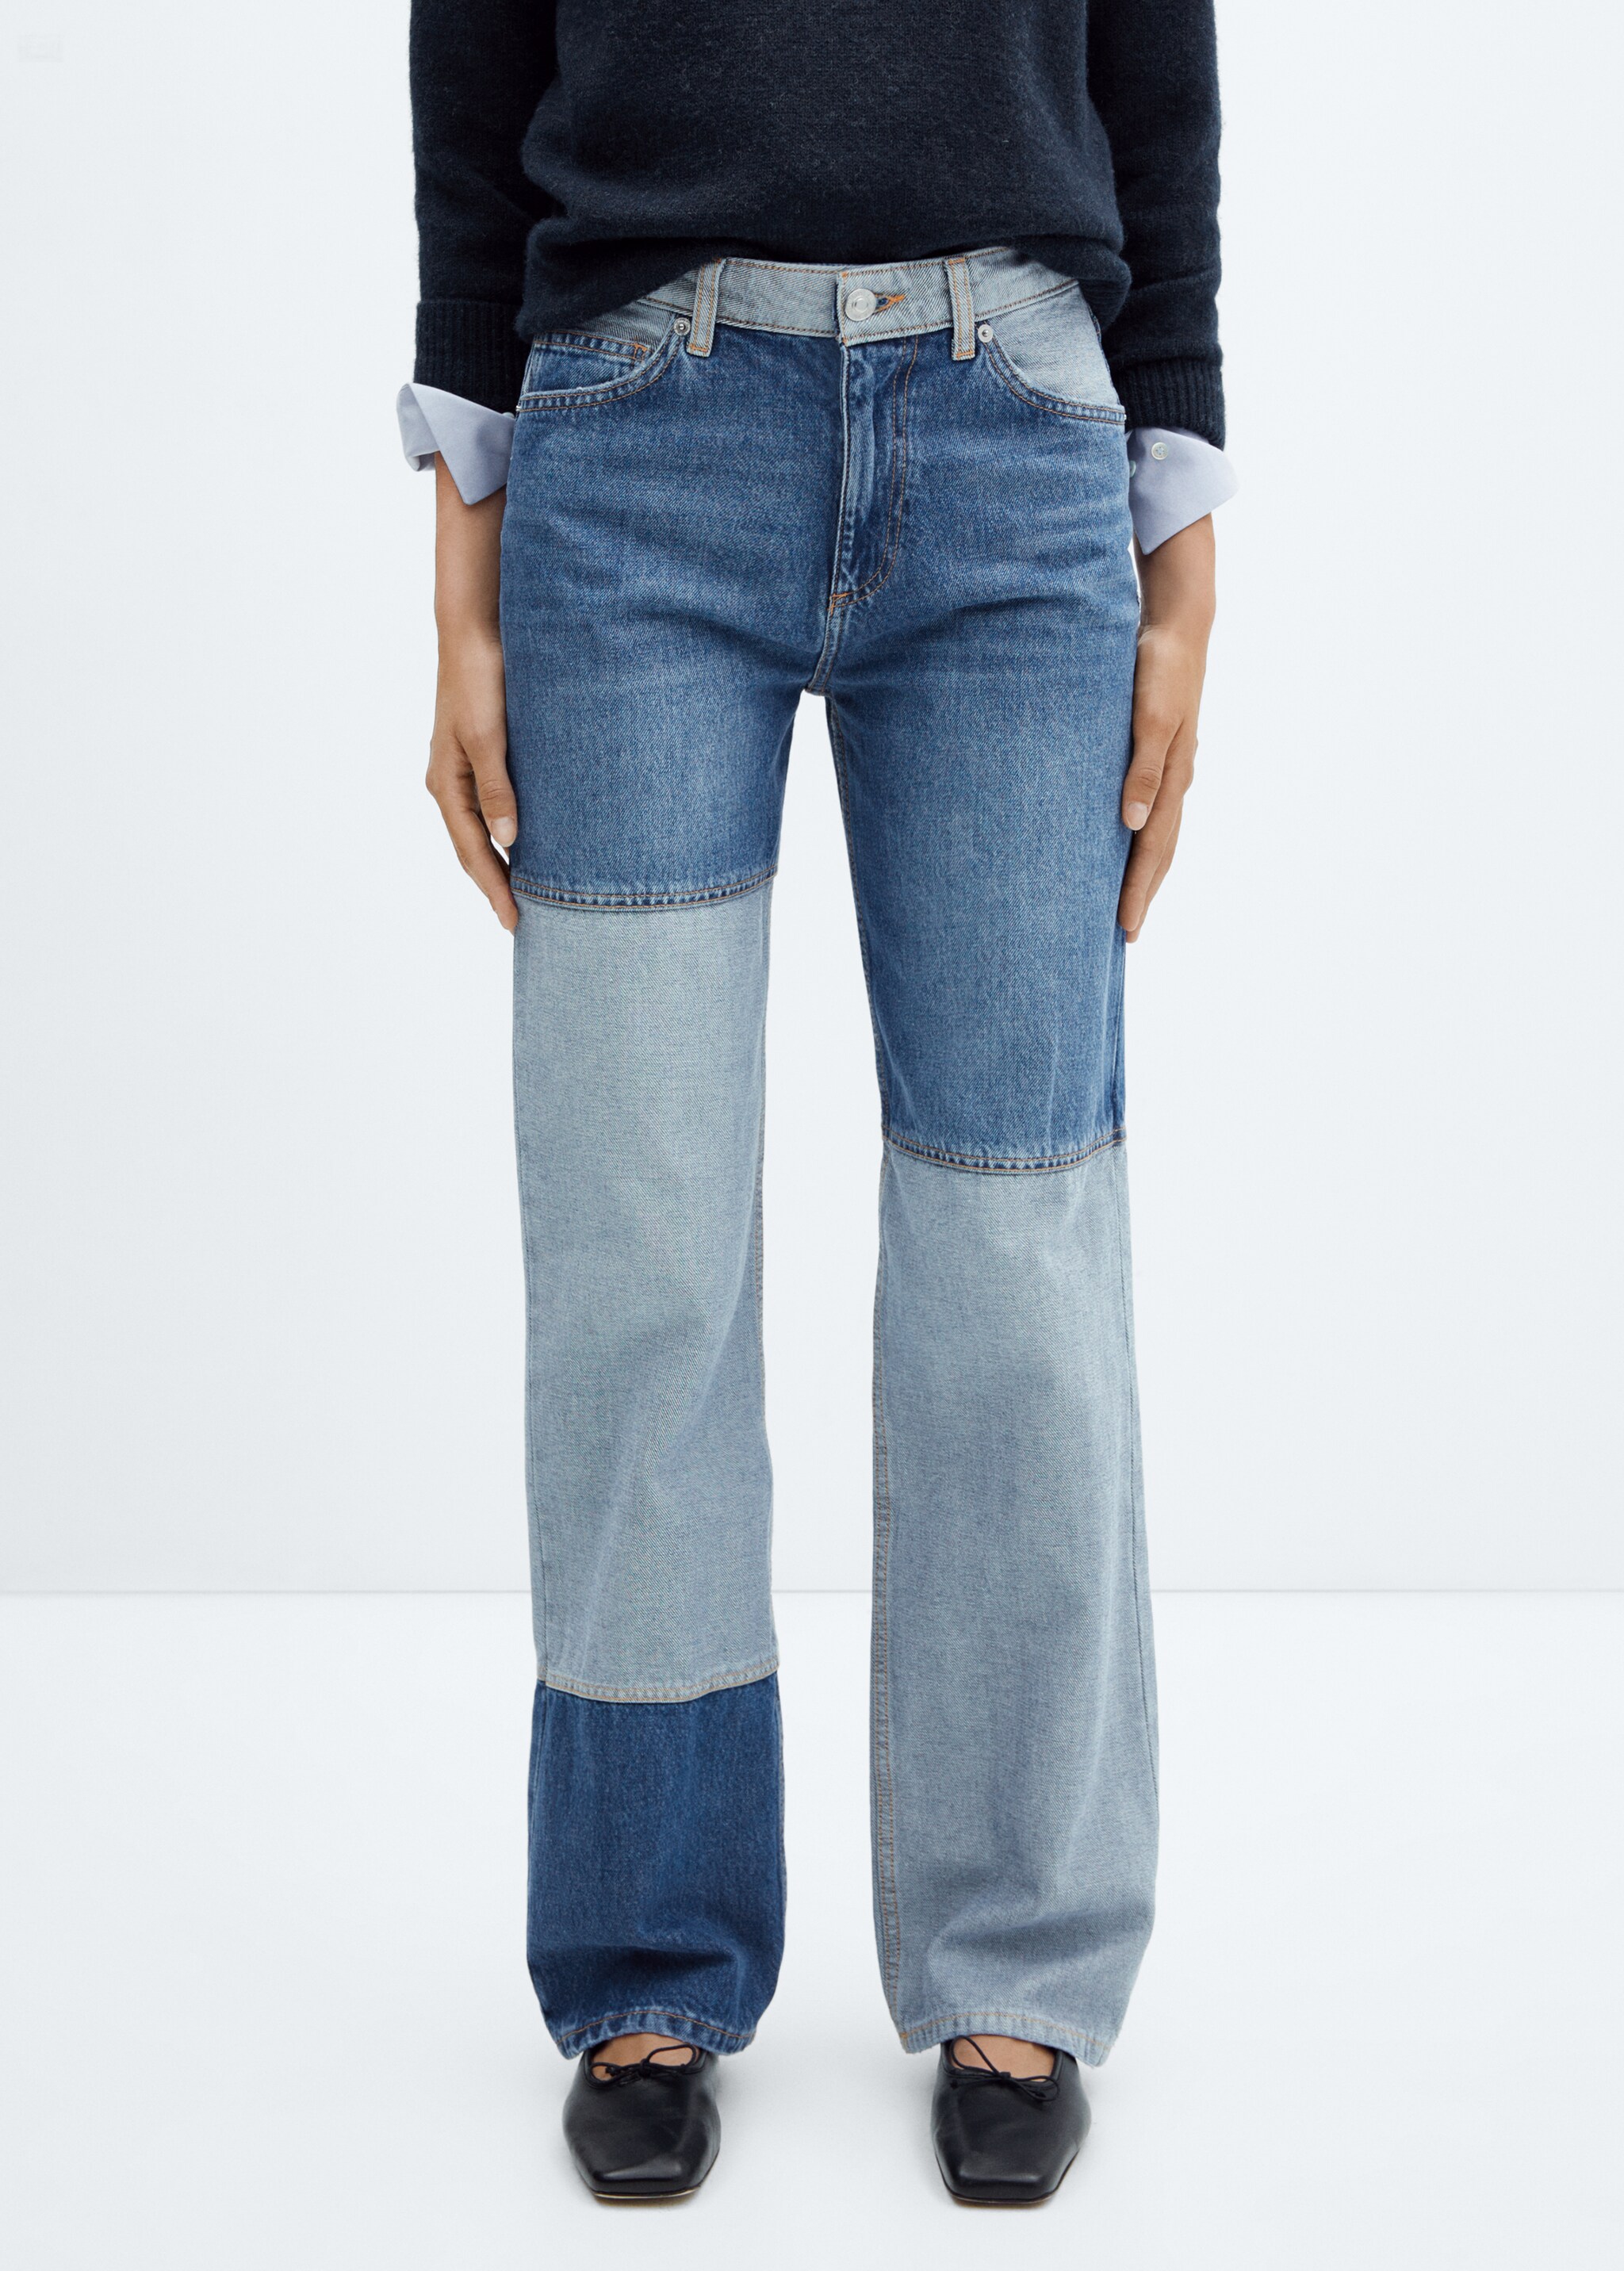 Patchworkowe jeansy z szerokimi nogawkami  - Plan średni